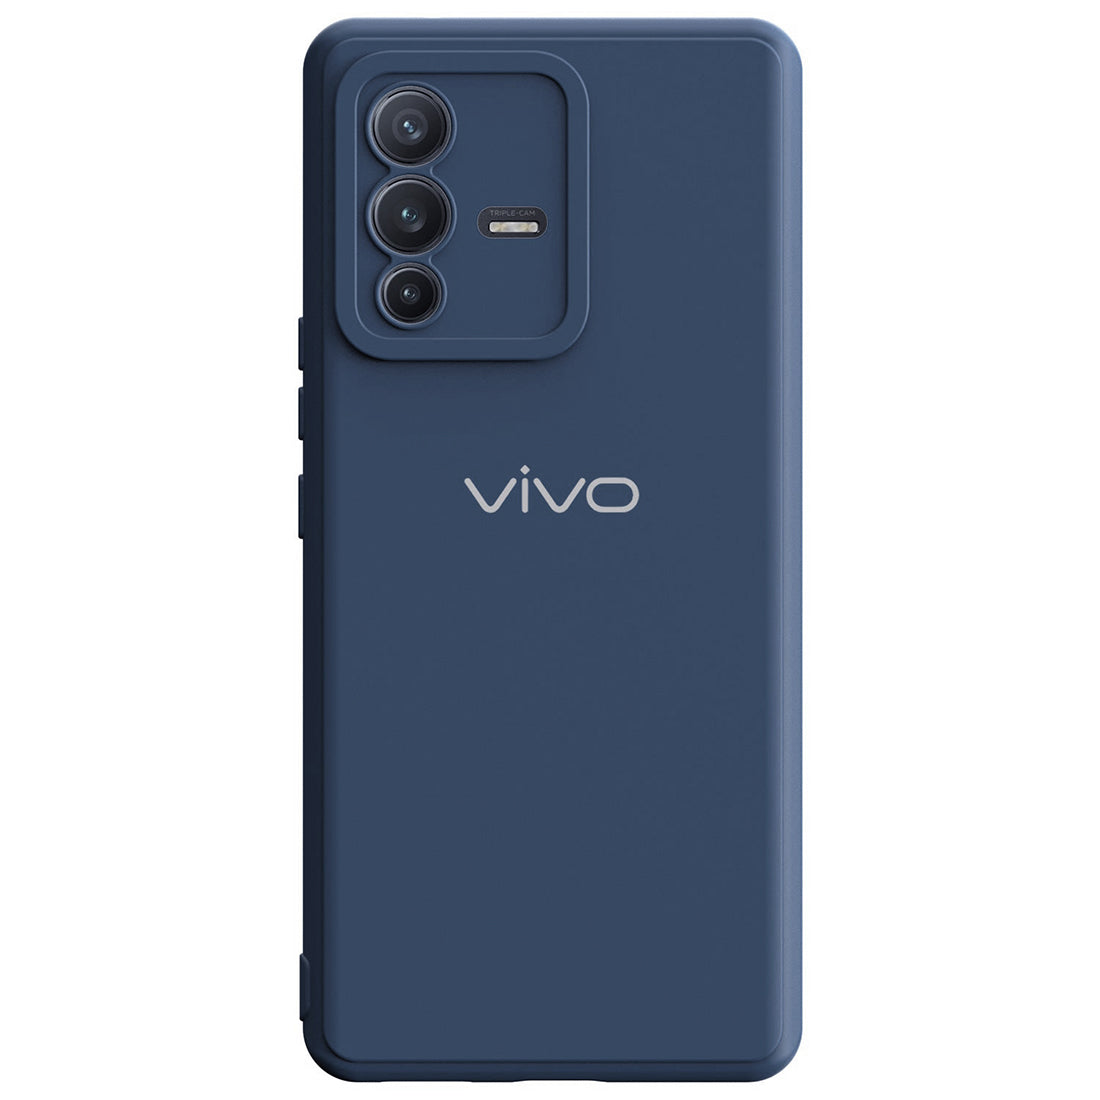 Liquid Silicone Case for Vivo V23 Pro 5G